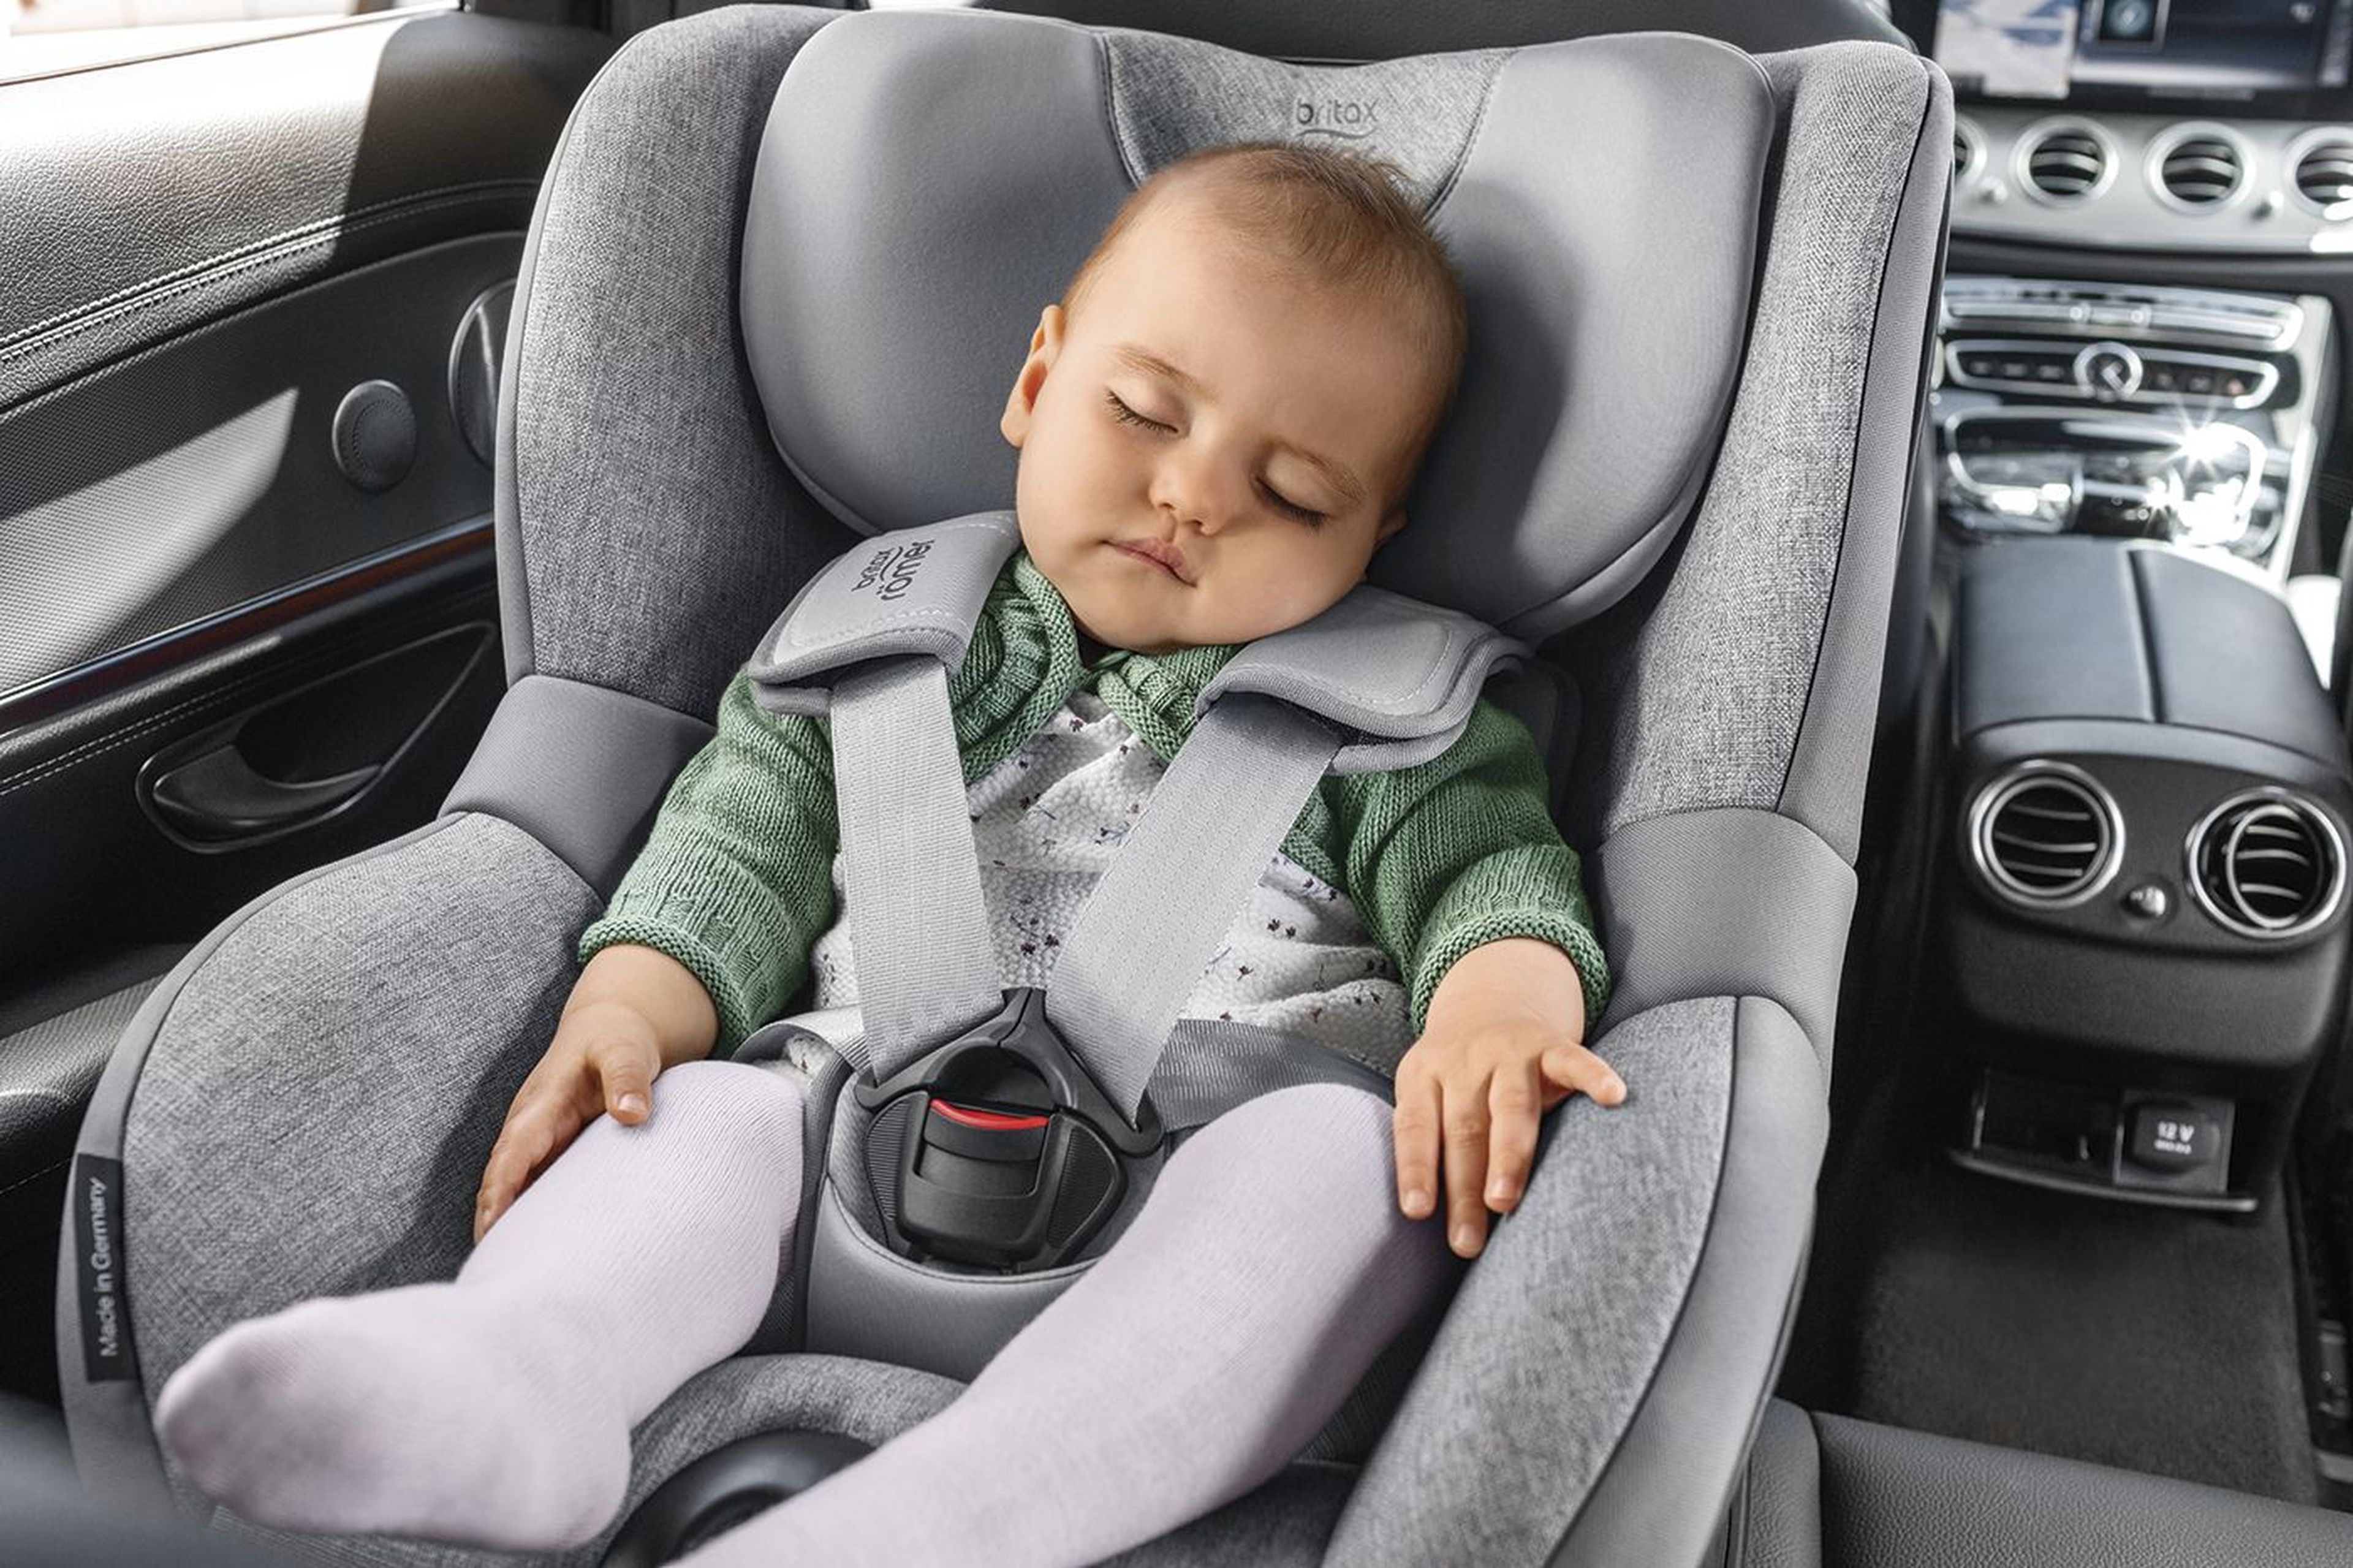 dentro de poco comida Condimento A qué edad puede dejar un niños de usar silla en el coche | Computer Hoy